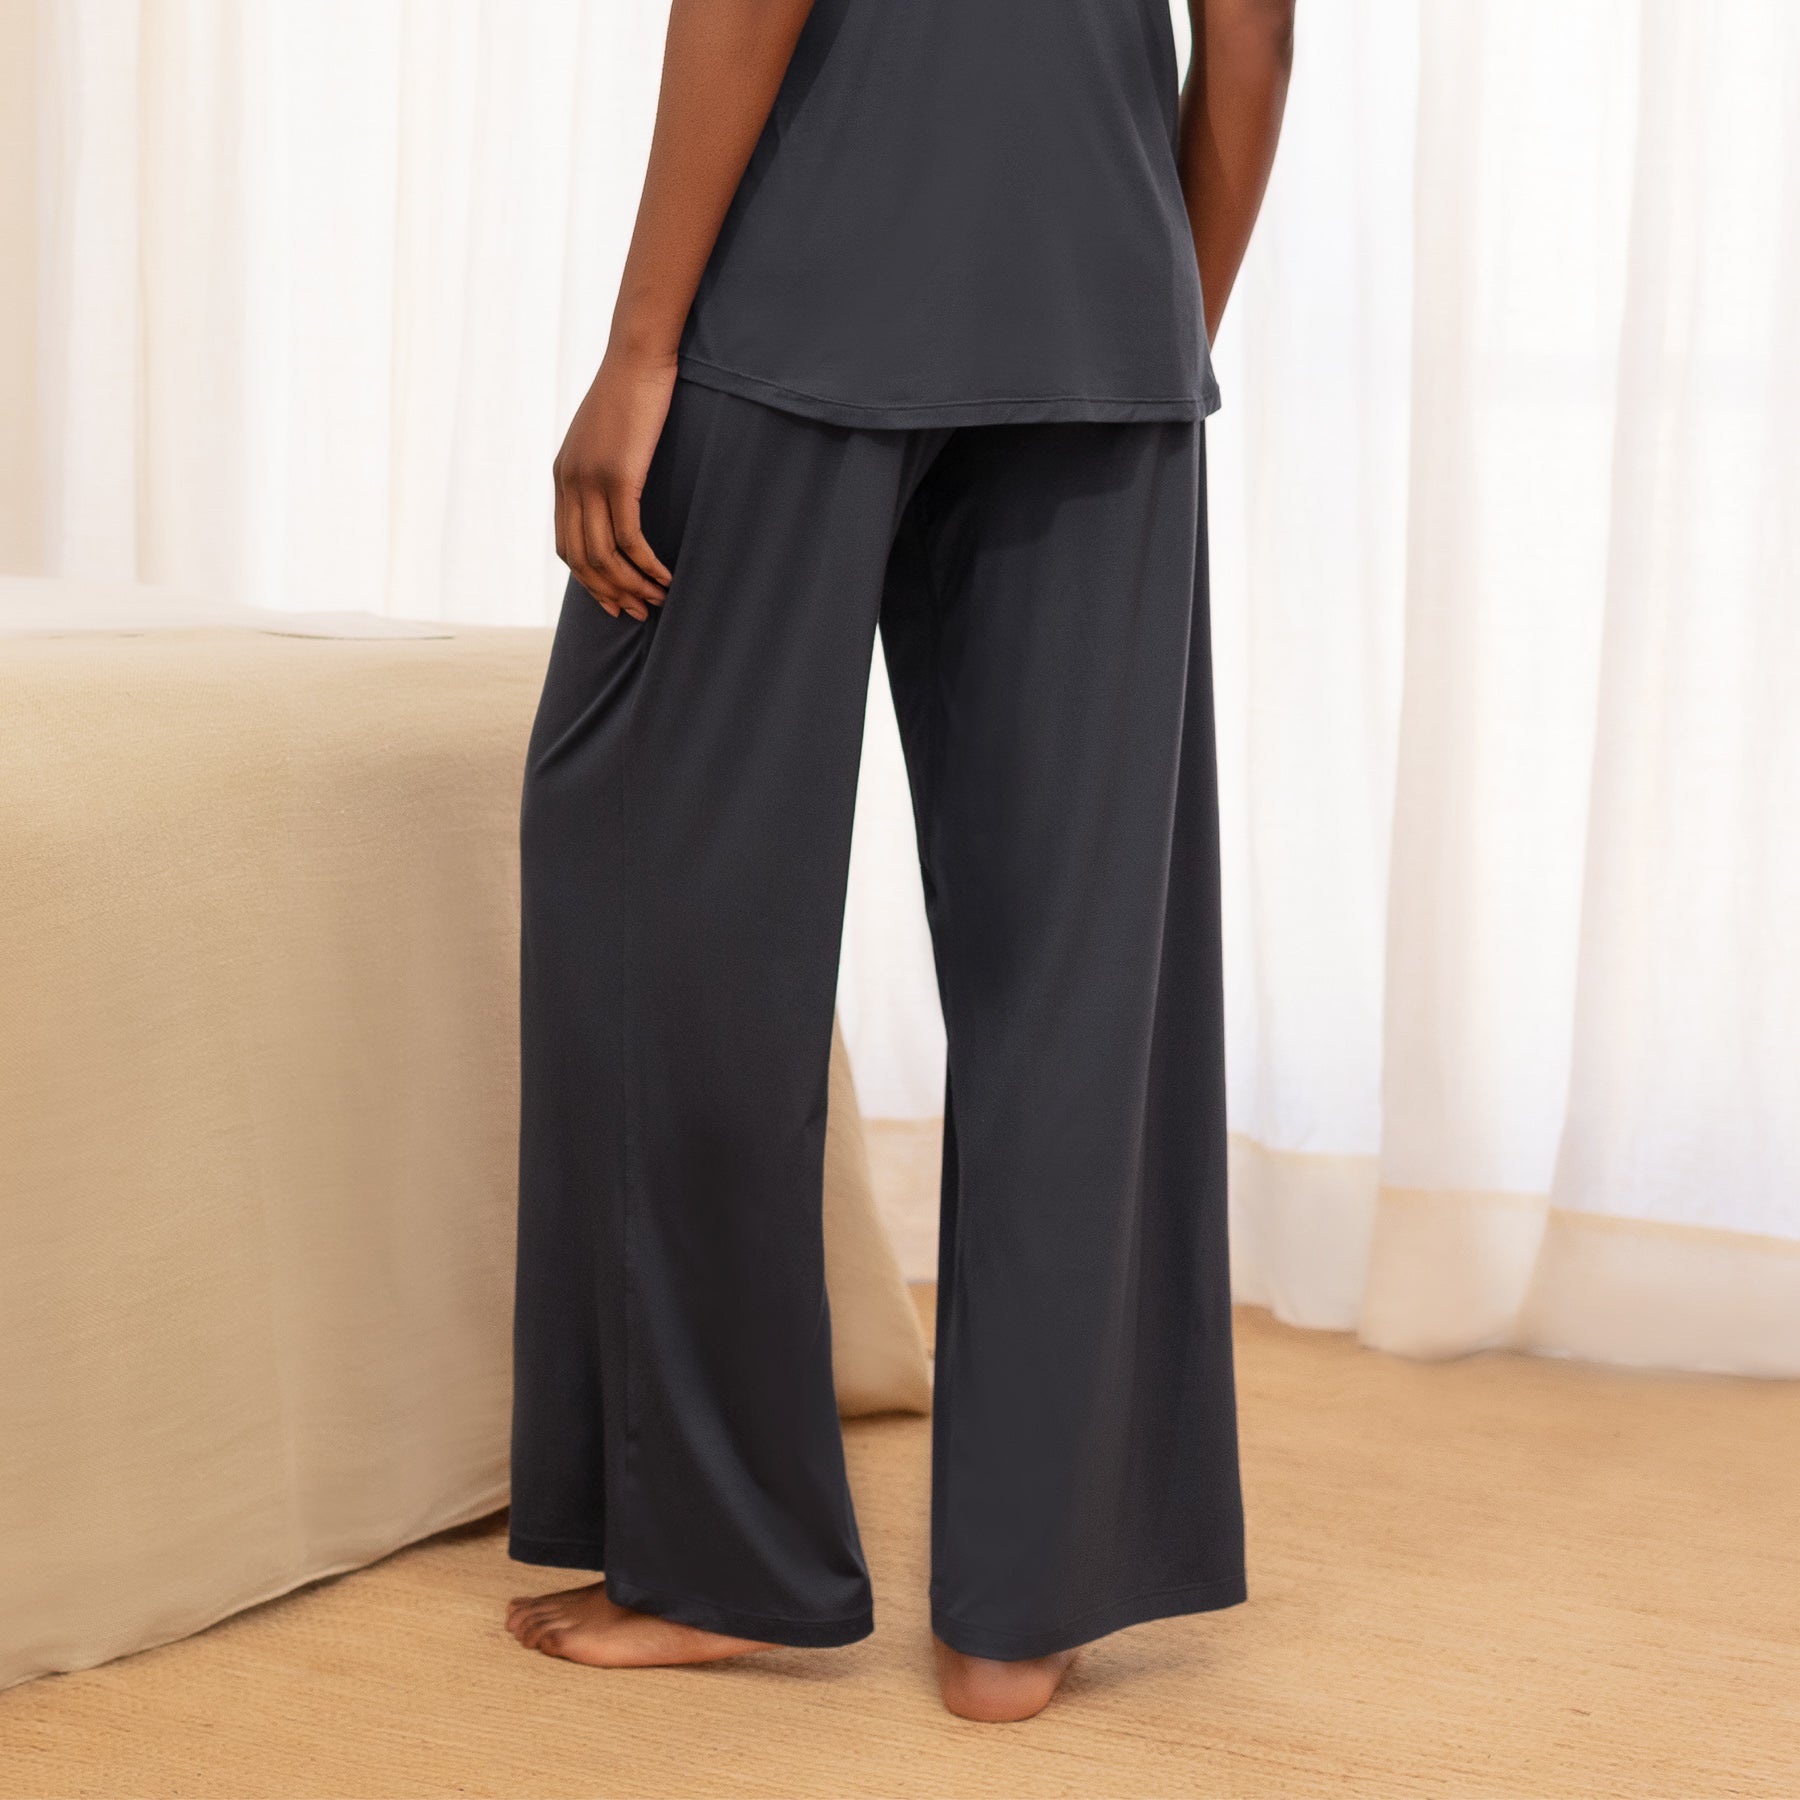 Women's cooling pajamas pants || Cool grey